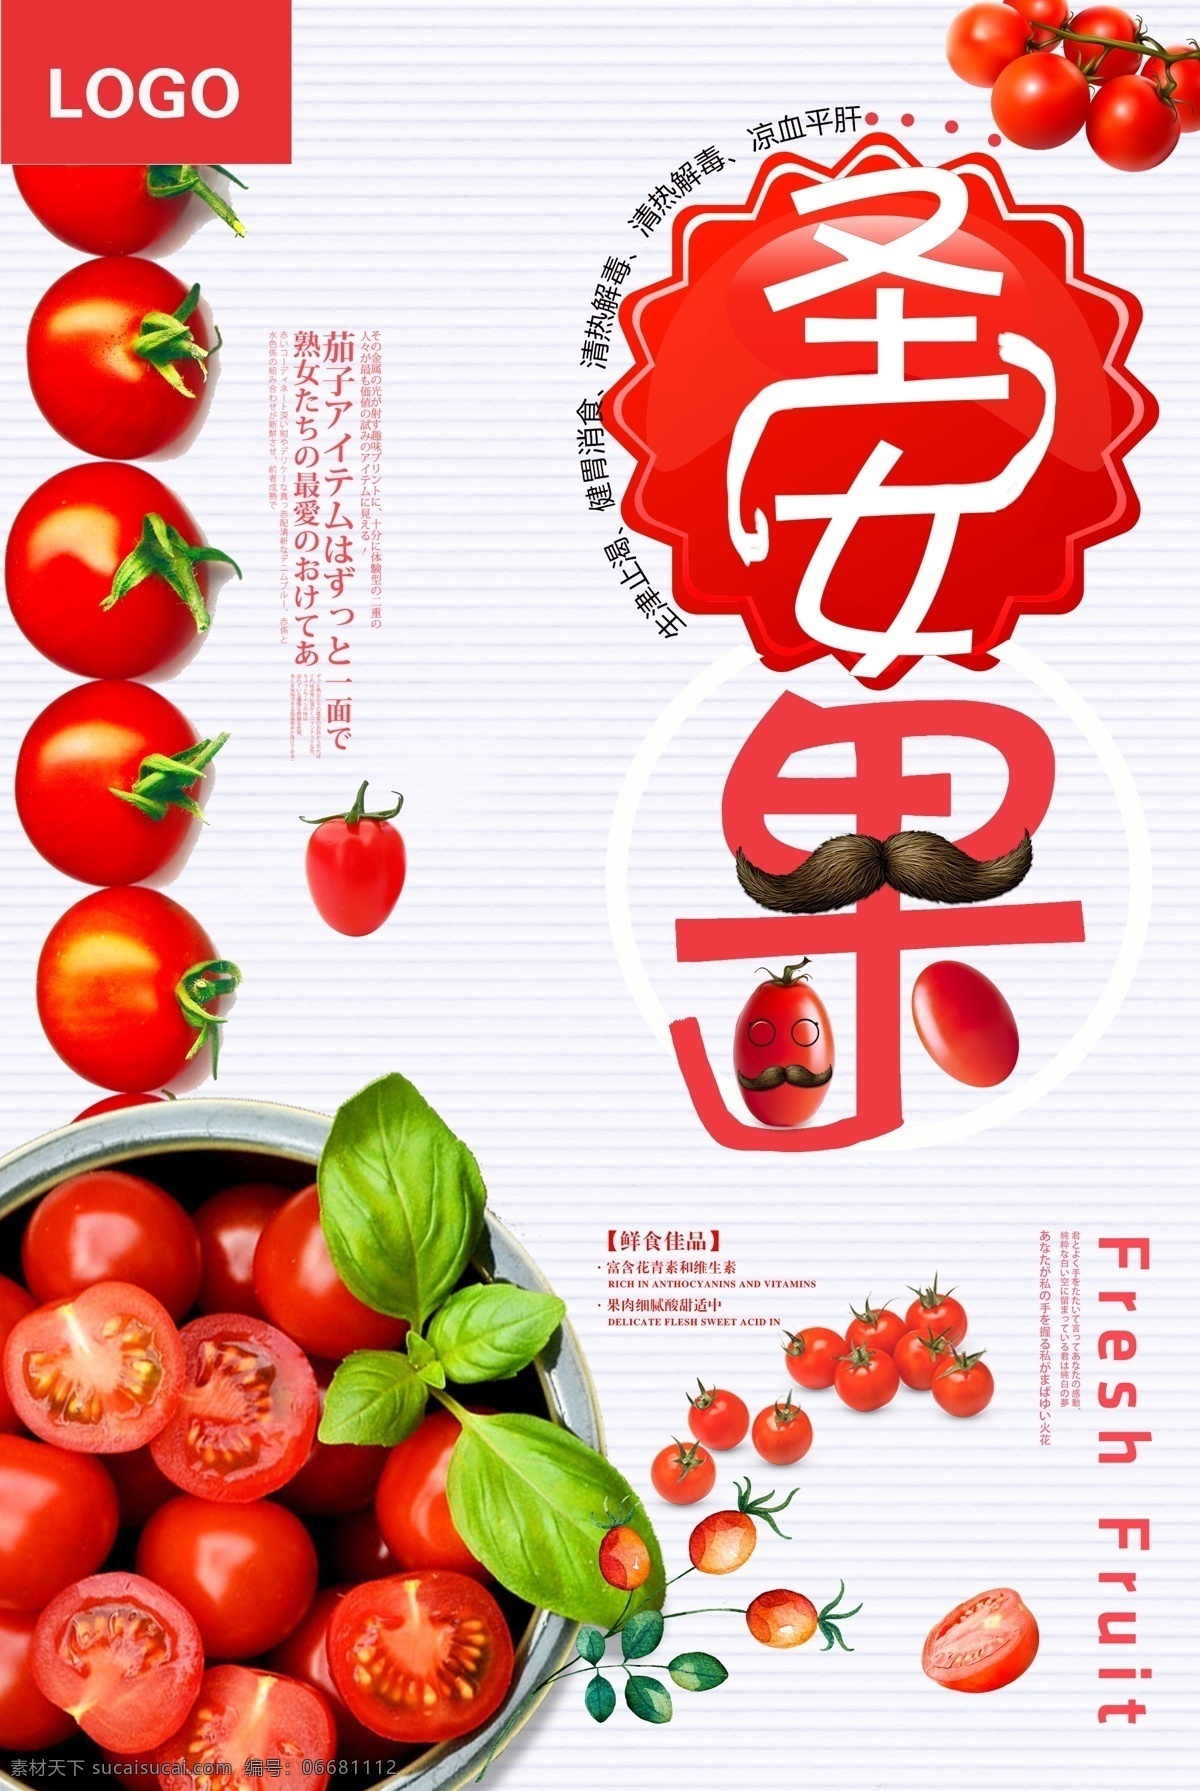 简约 小 清新 圣女 果 促销 海报 食物 红色 蔬菜 绿色 番茄圣女果 天然食物 小番茄 圣女果 健康食品 水果 健康食物 新鲜 蔬果